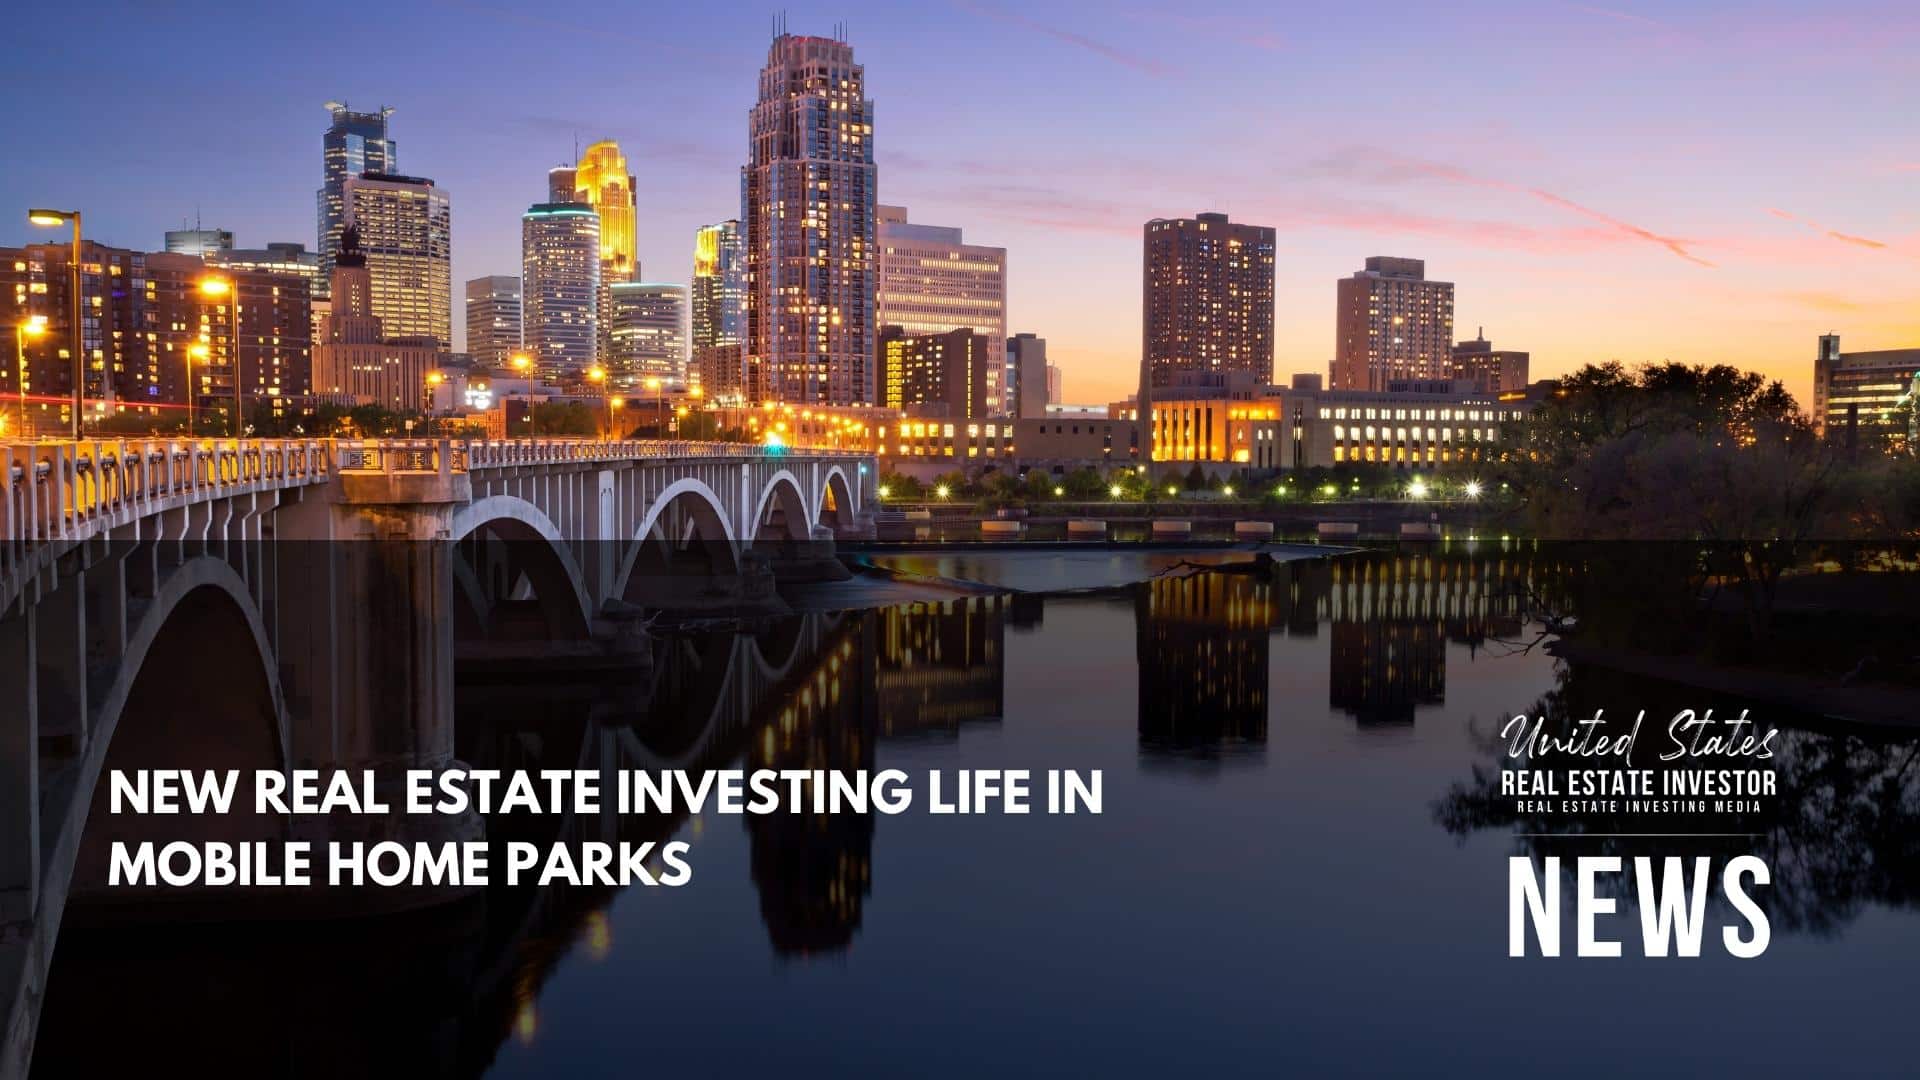 United States Real Estate Investor - Real estate investing media - New Real Estate Investing Life In Mobile Home Parks